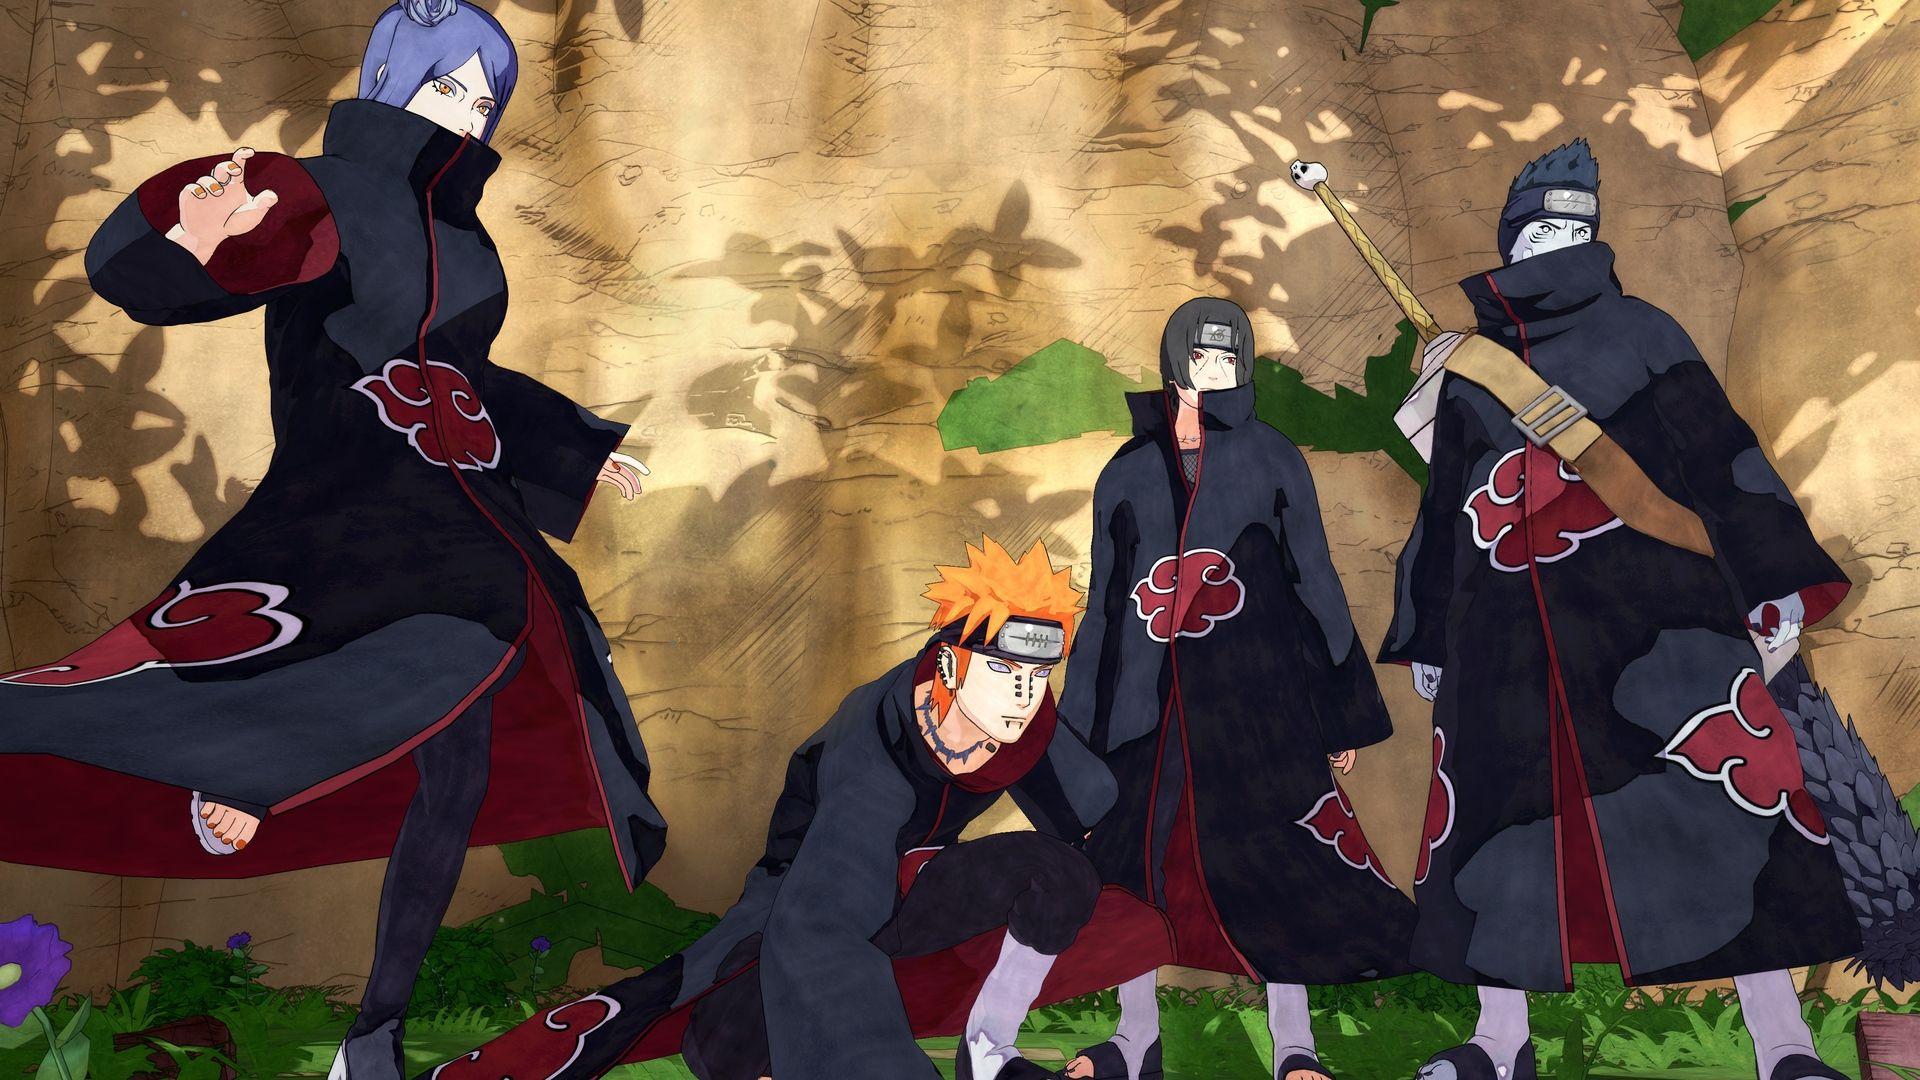 Akatsuki Pain Itachi Kisame Naruto t. Wallpaper